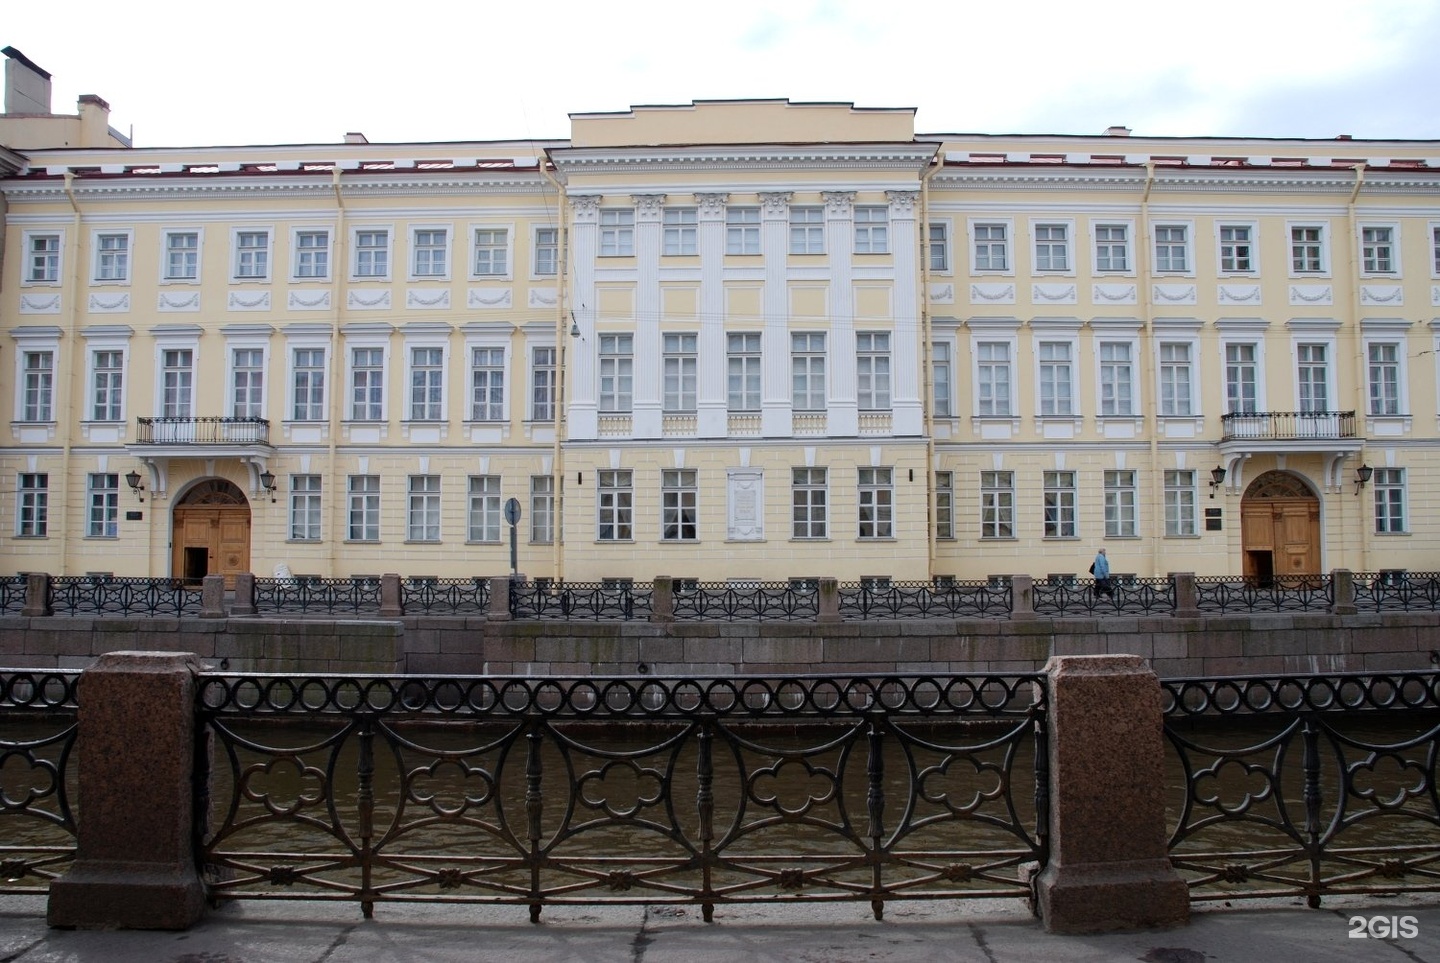 Музей квартира пушкина в санкт петербурге фото